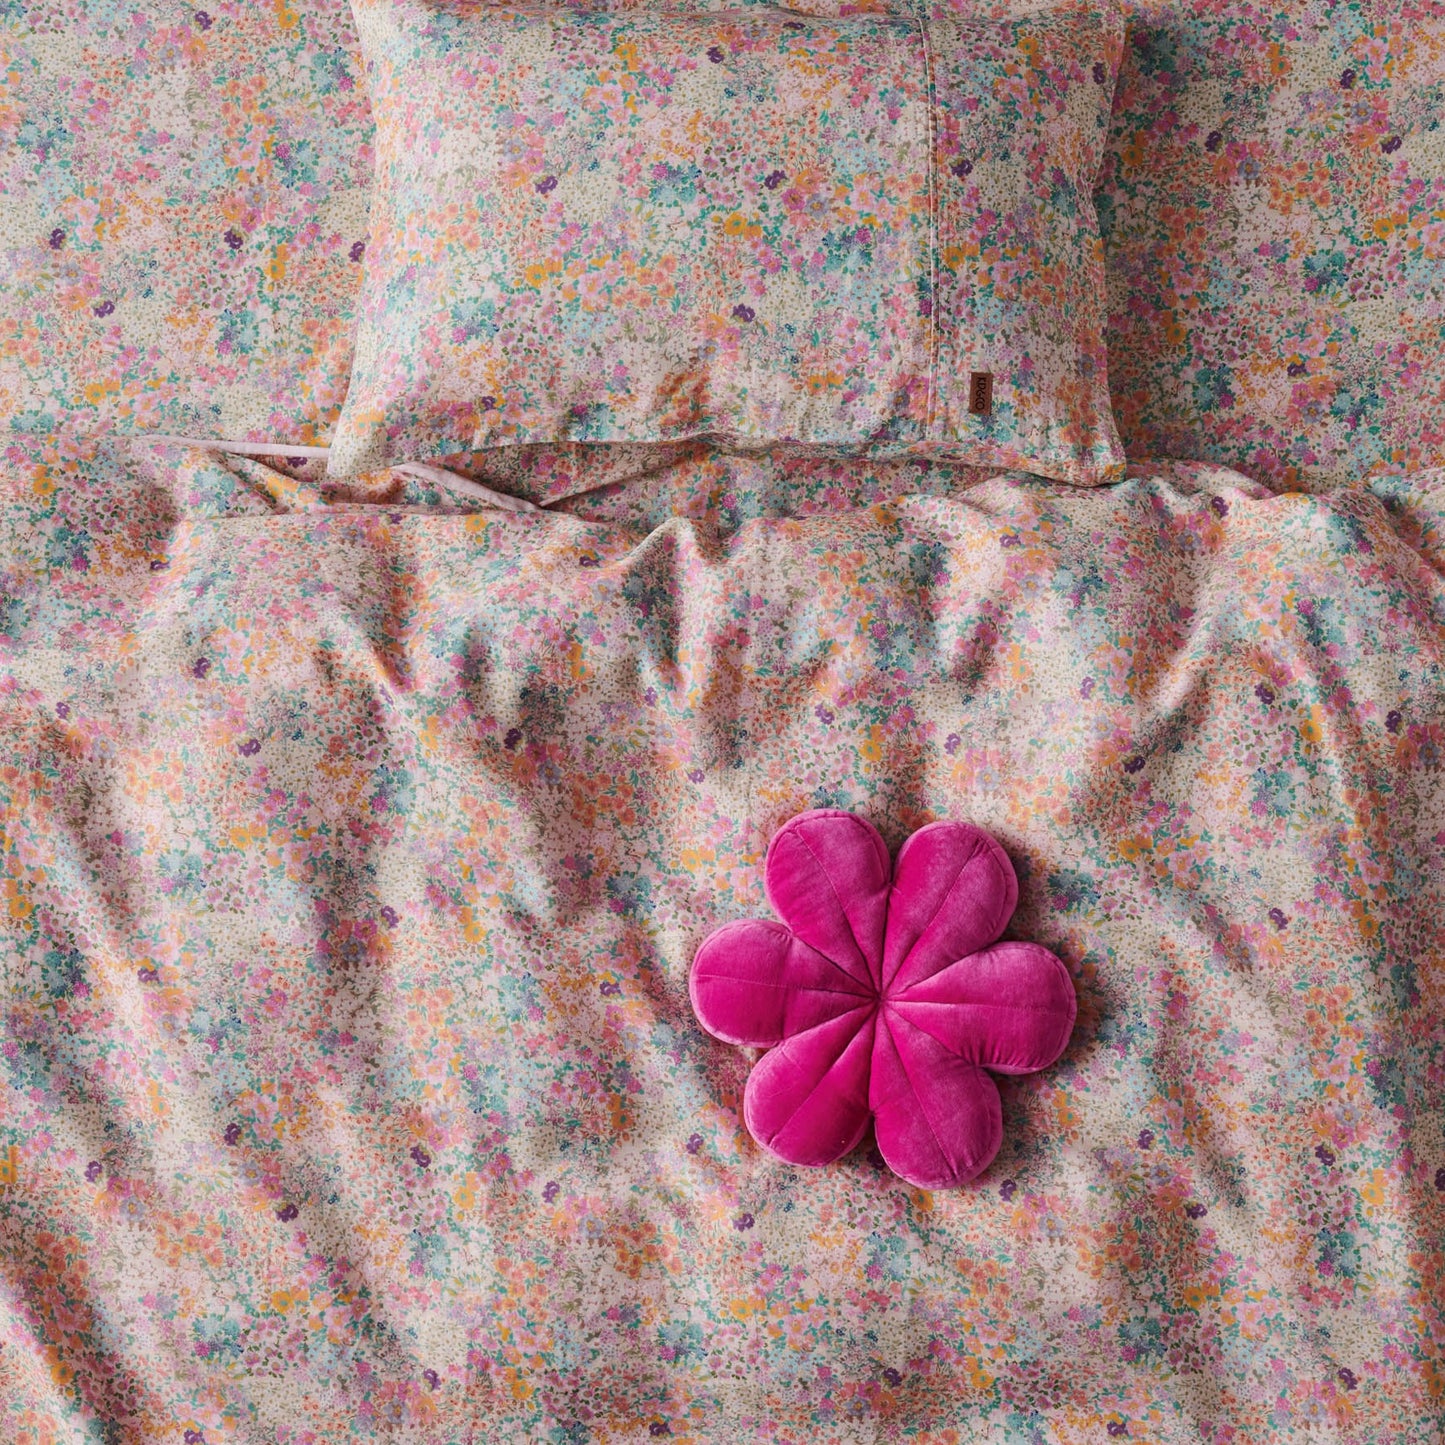 Kip&Co - Raspberry Velvet Petal Cushion